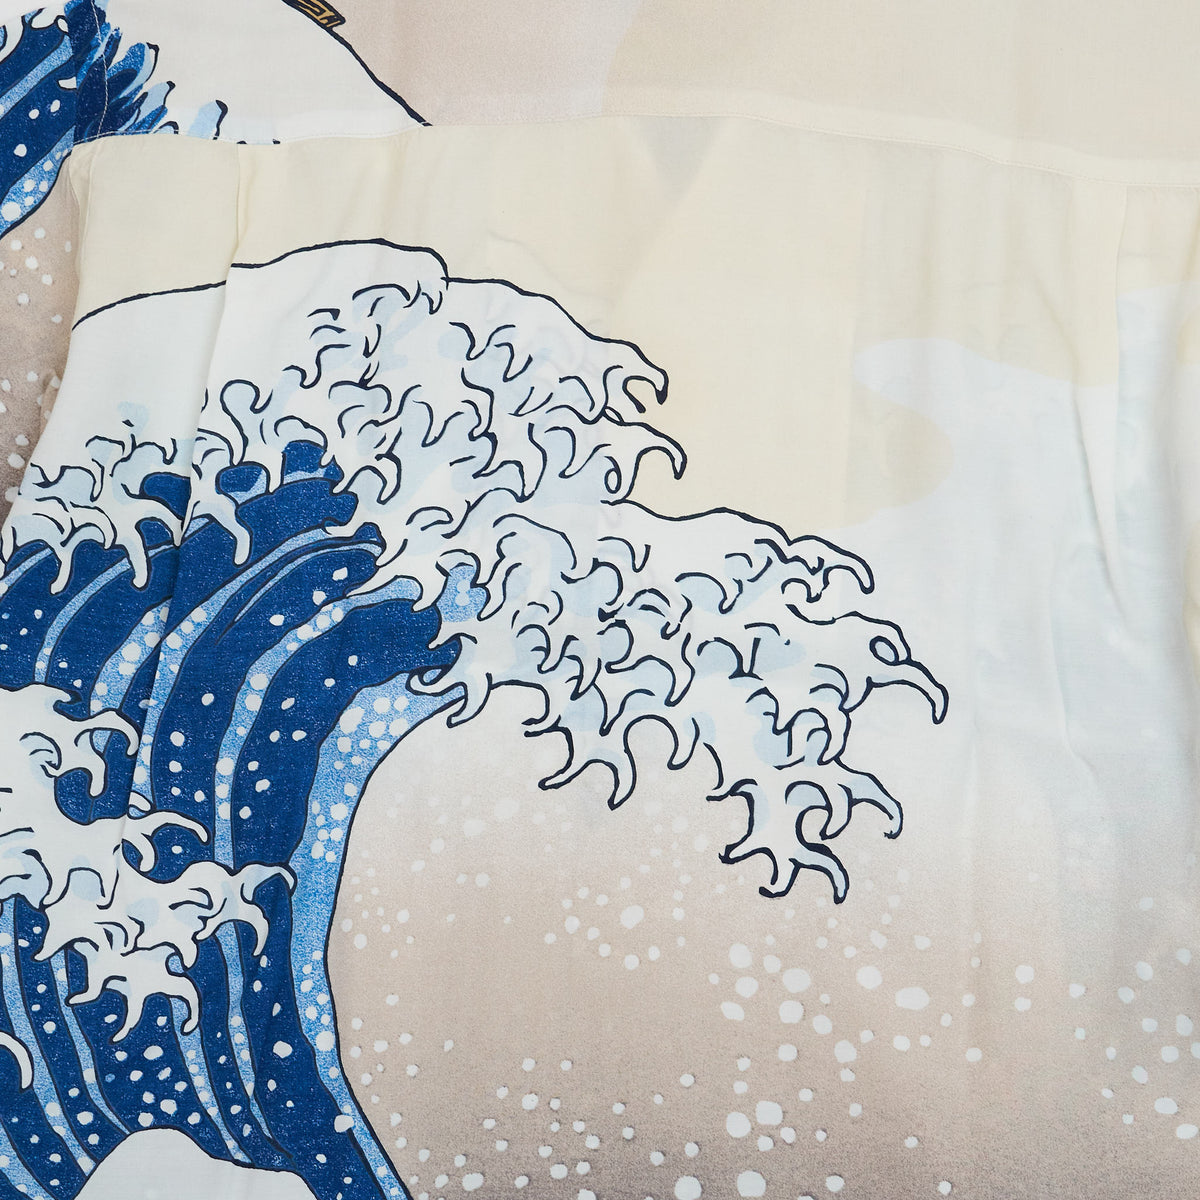 Sun Surf Limited Edition Hokusai The Great Wave of Kanagawa Hawaiian Shirt